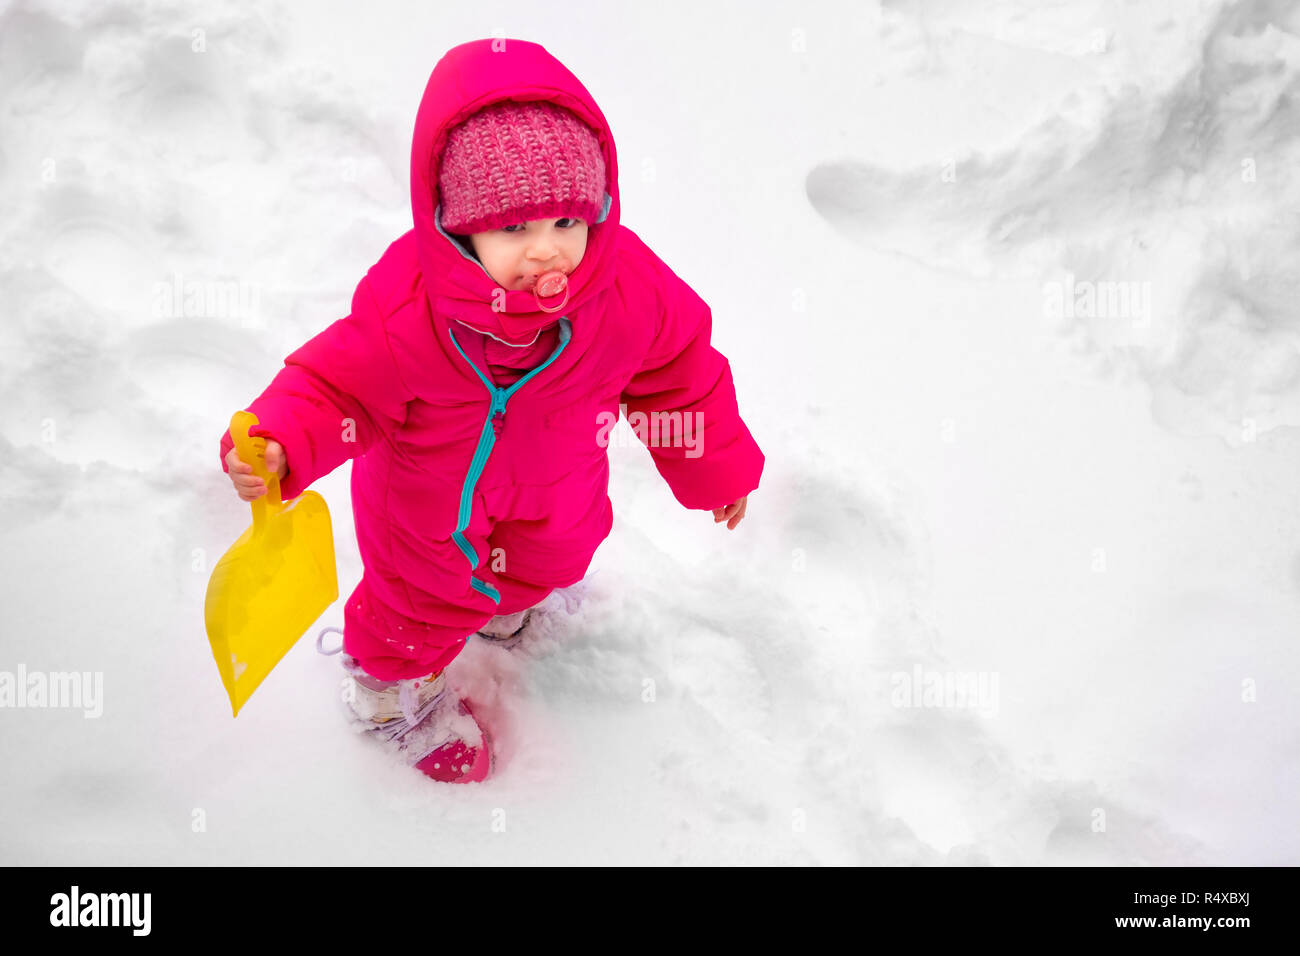 Little baby girl voir jouer la neige hiver combinaison de ski enfant wearpink Banque D'Images